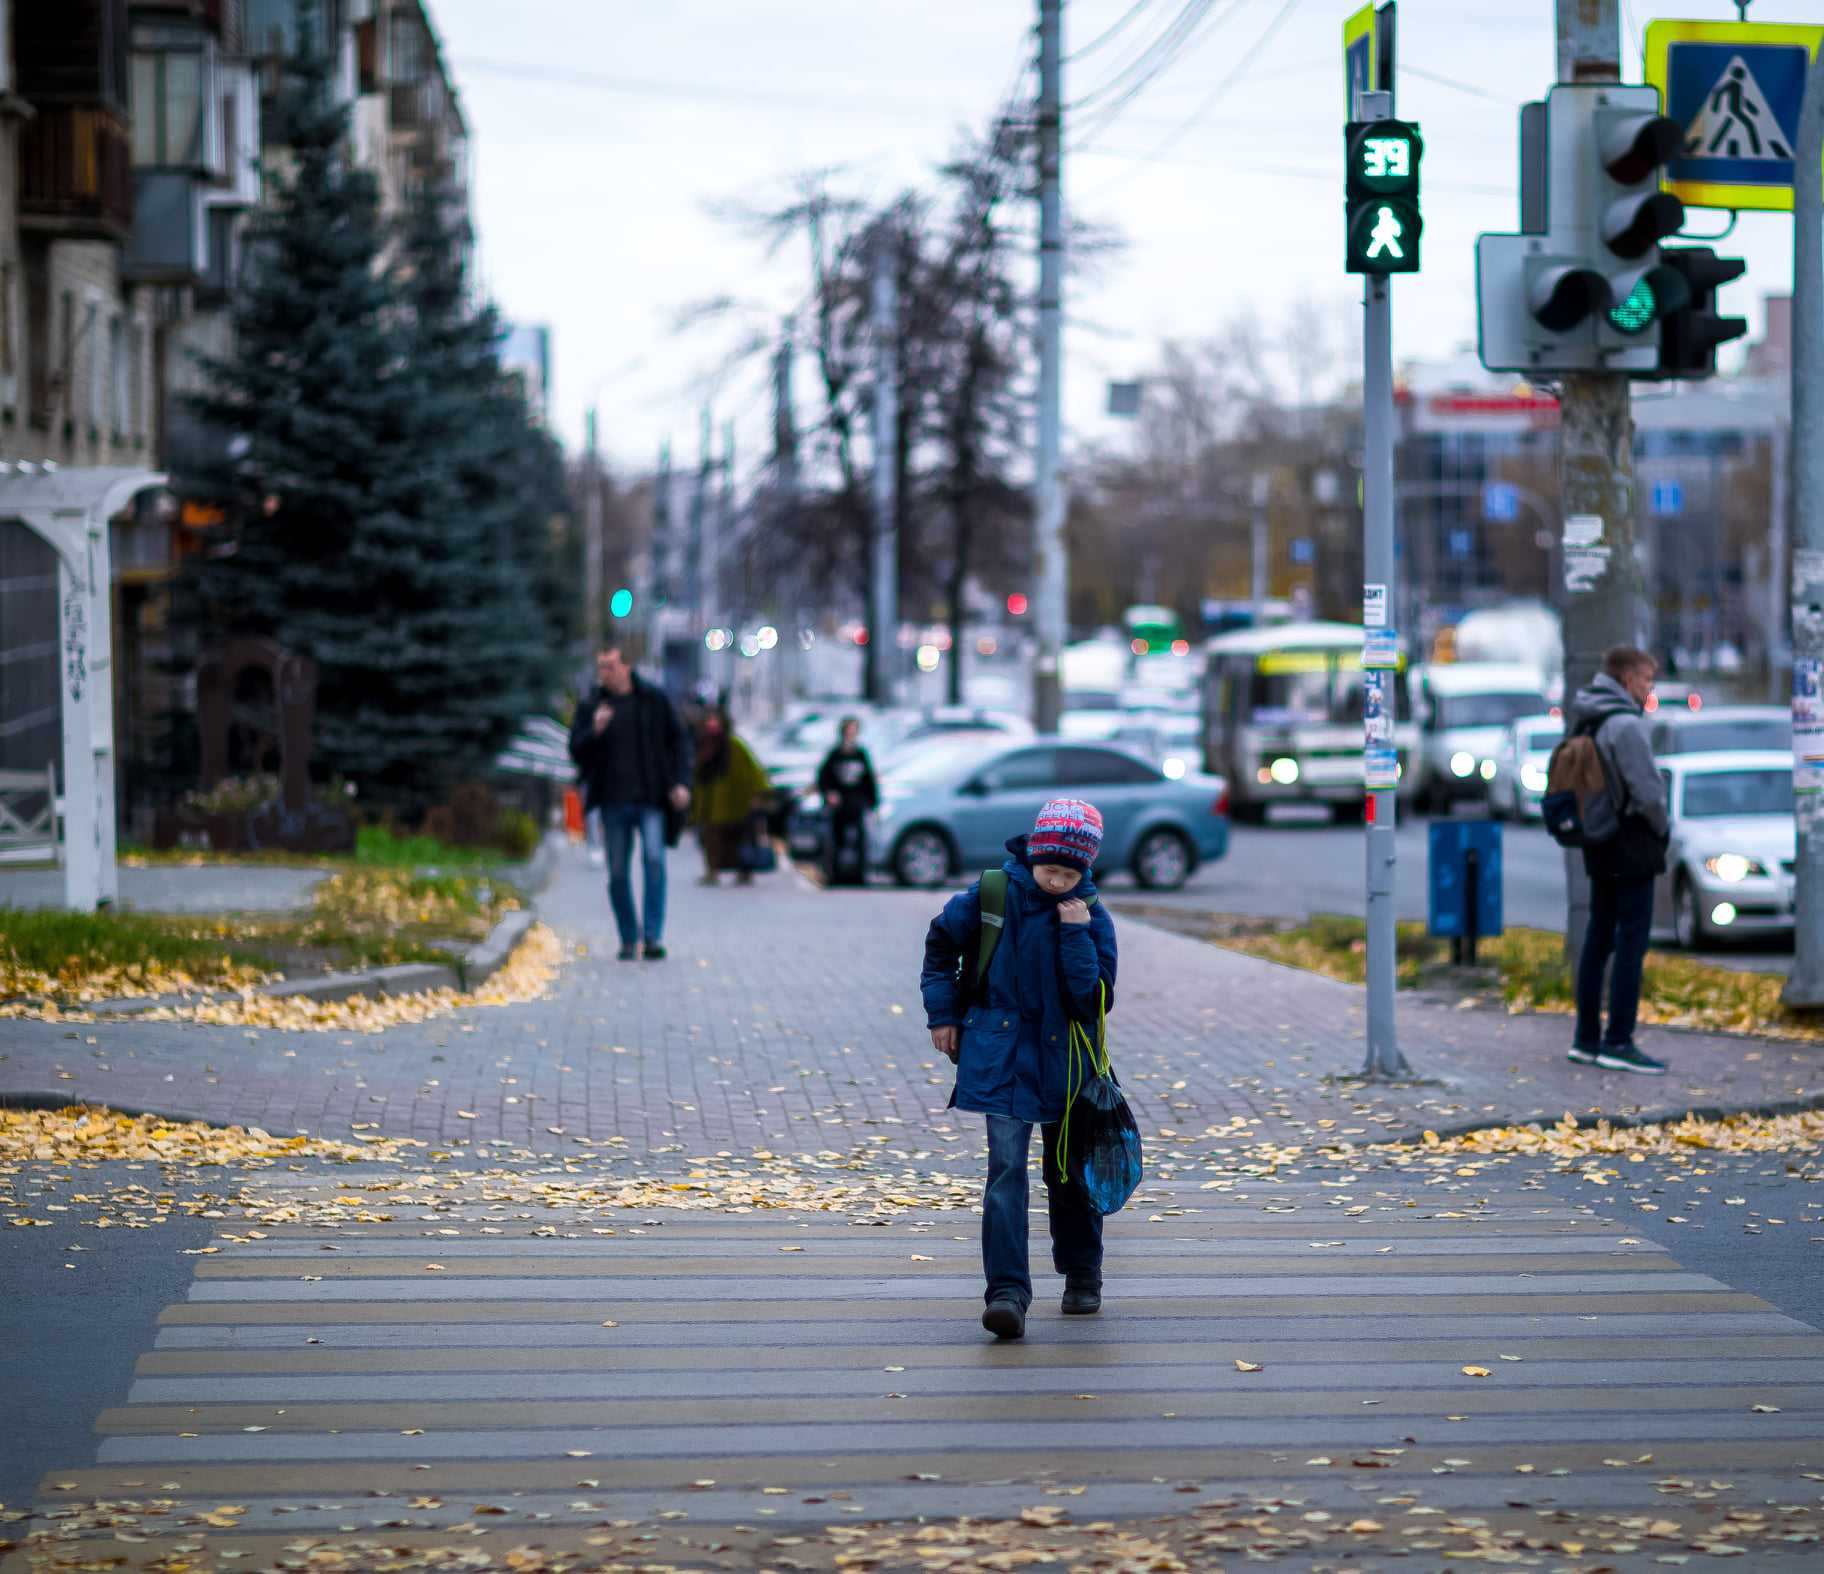 Синоптики уточнили сроки похолодания в Челябинске